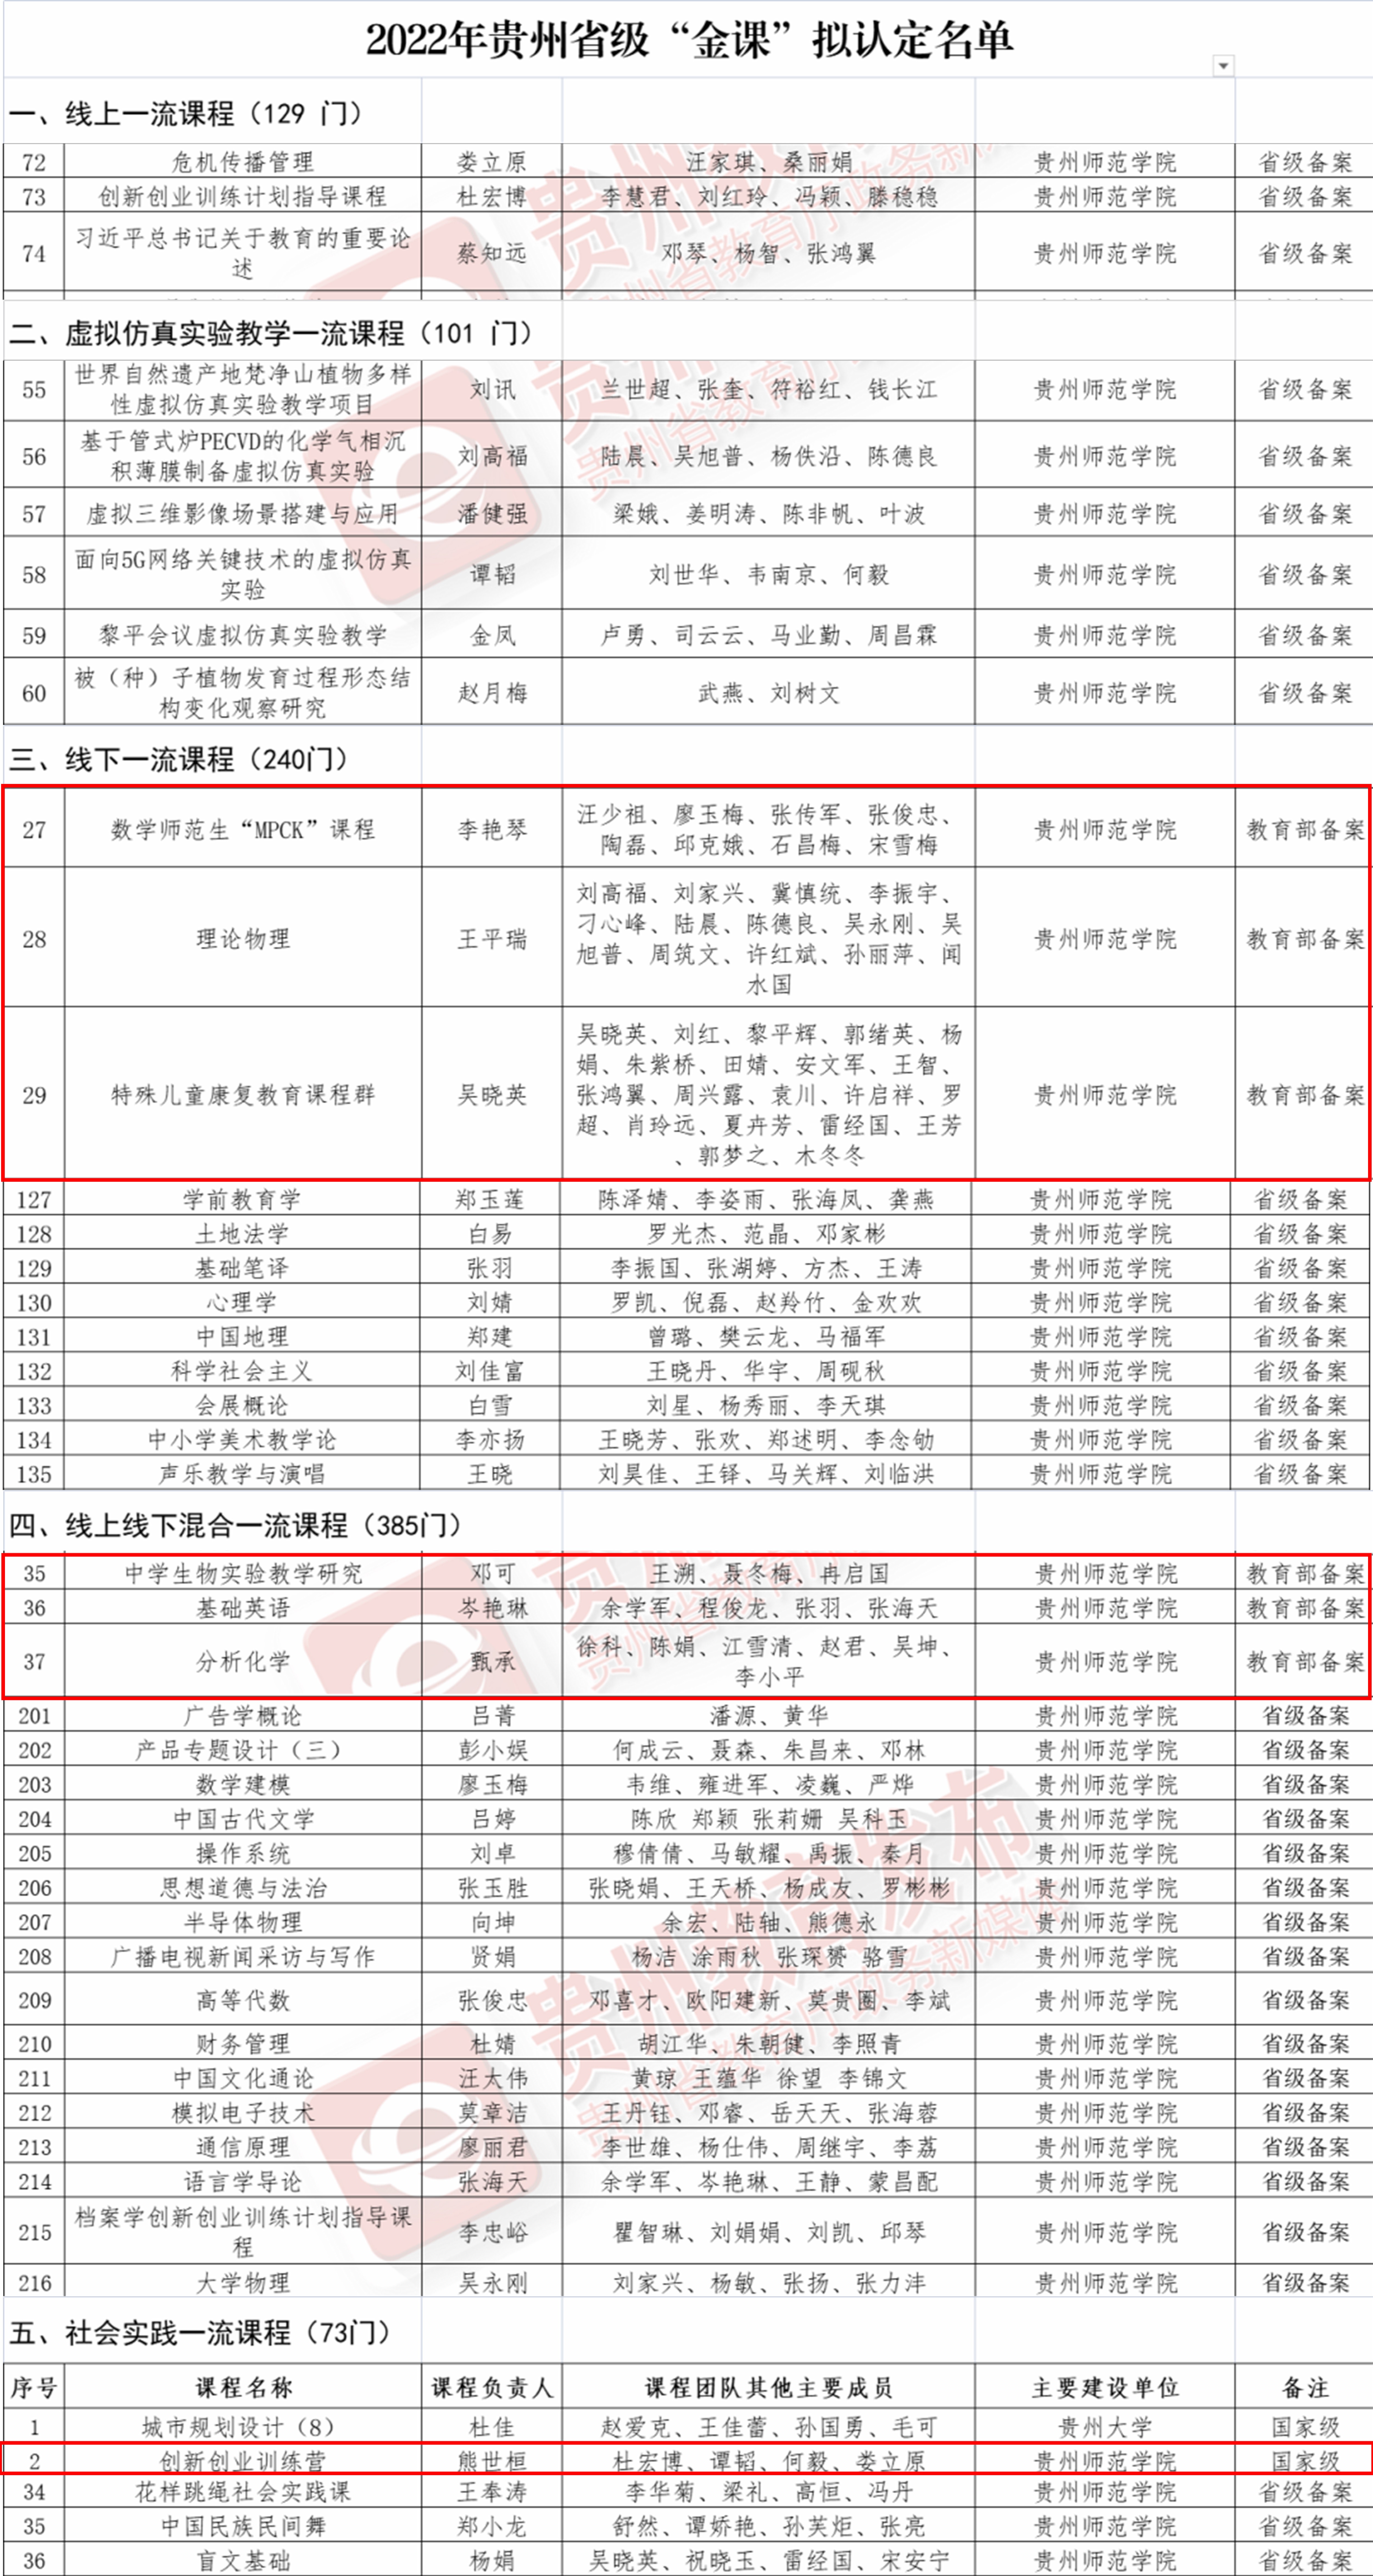 4.贵州师范学院获认省级“金课”定名单.jpg